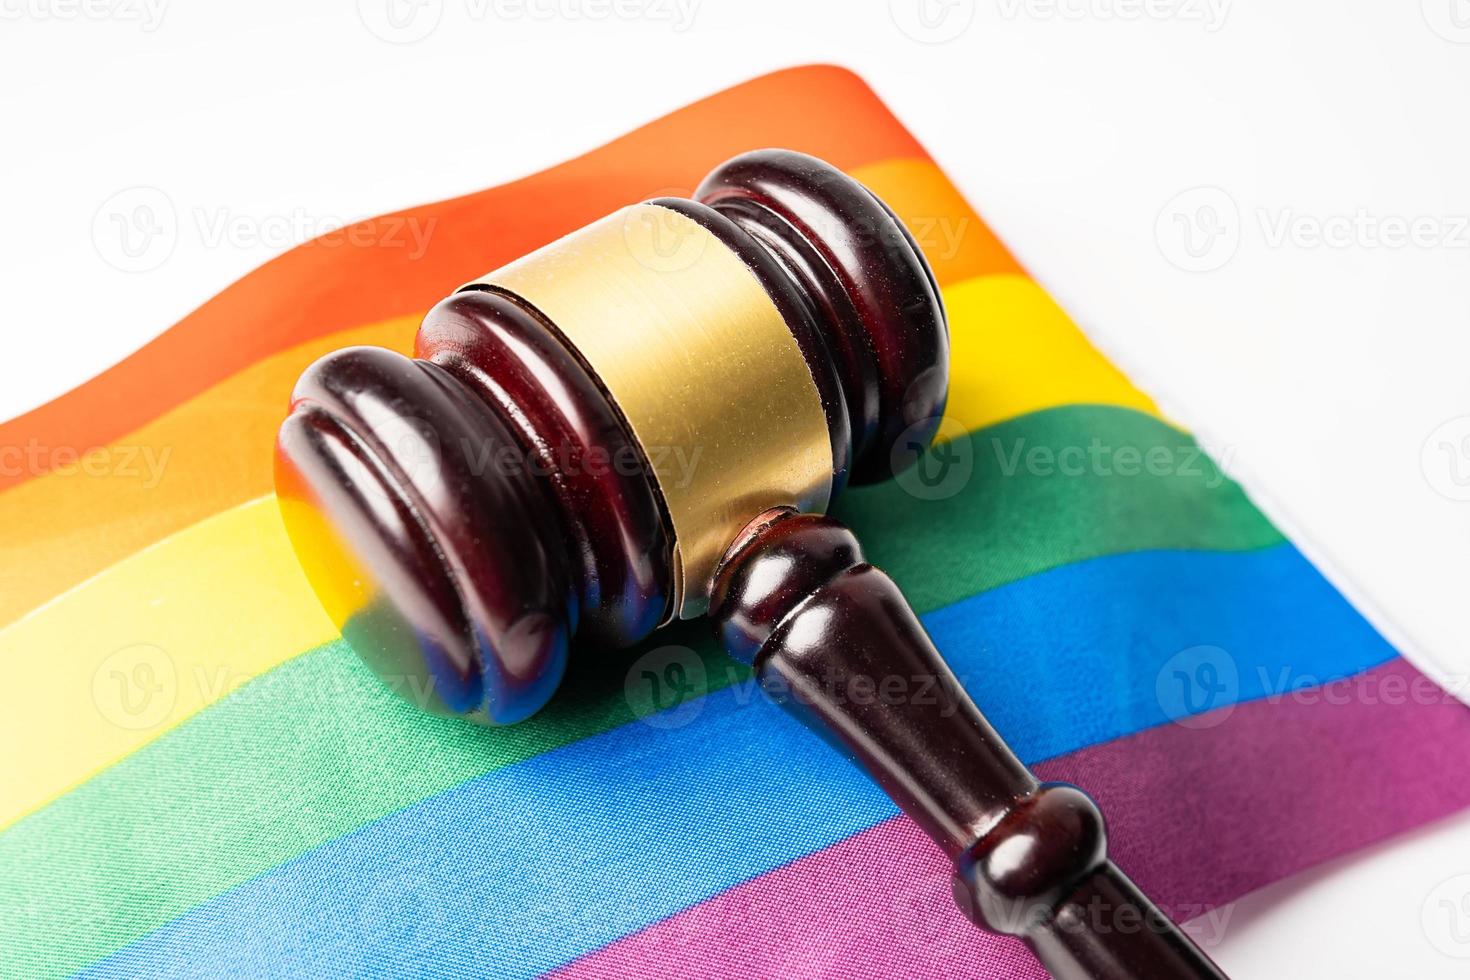 martelo para advogado juiz na bandeira do arco-íris, símbolo do mês do orgulho LGBT, comemora anualmente em junho social de gays, lésbicas, bissexuais, transgêneros, direitos humanos. foto